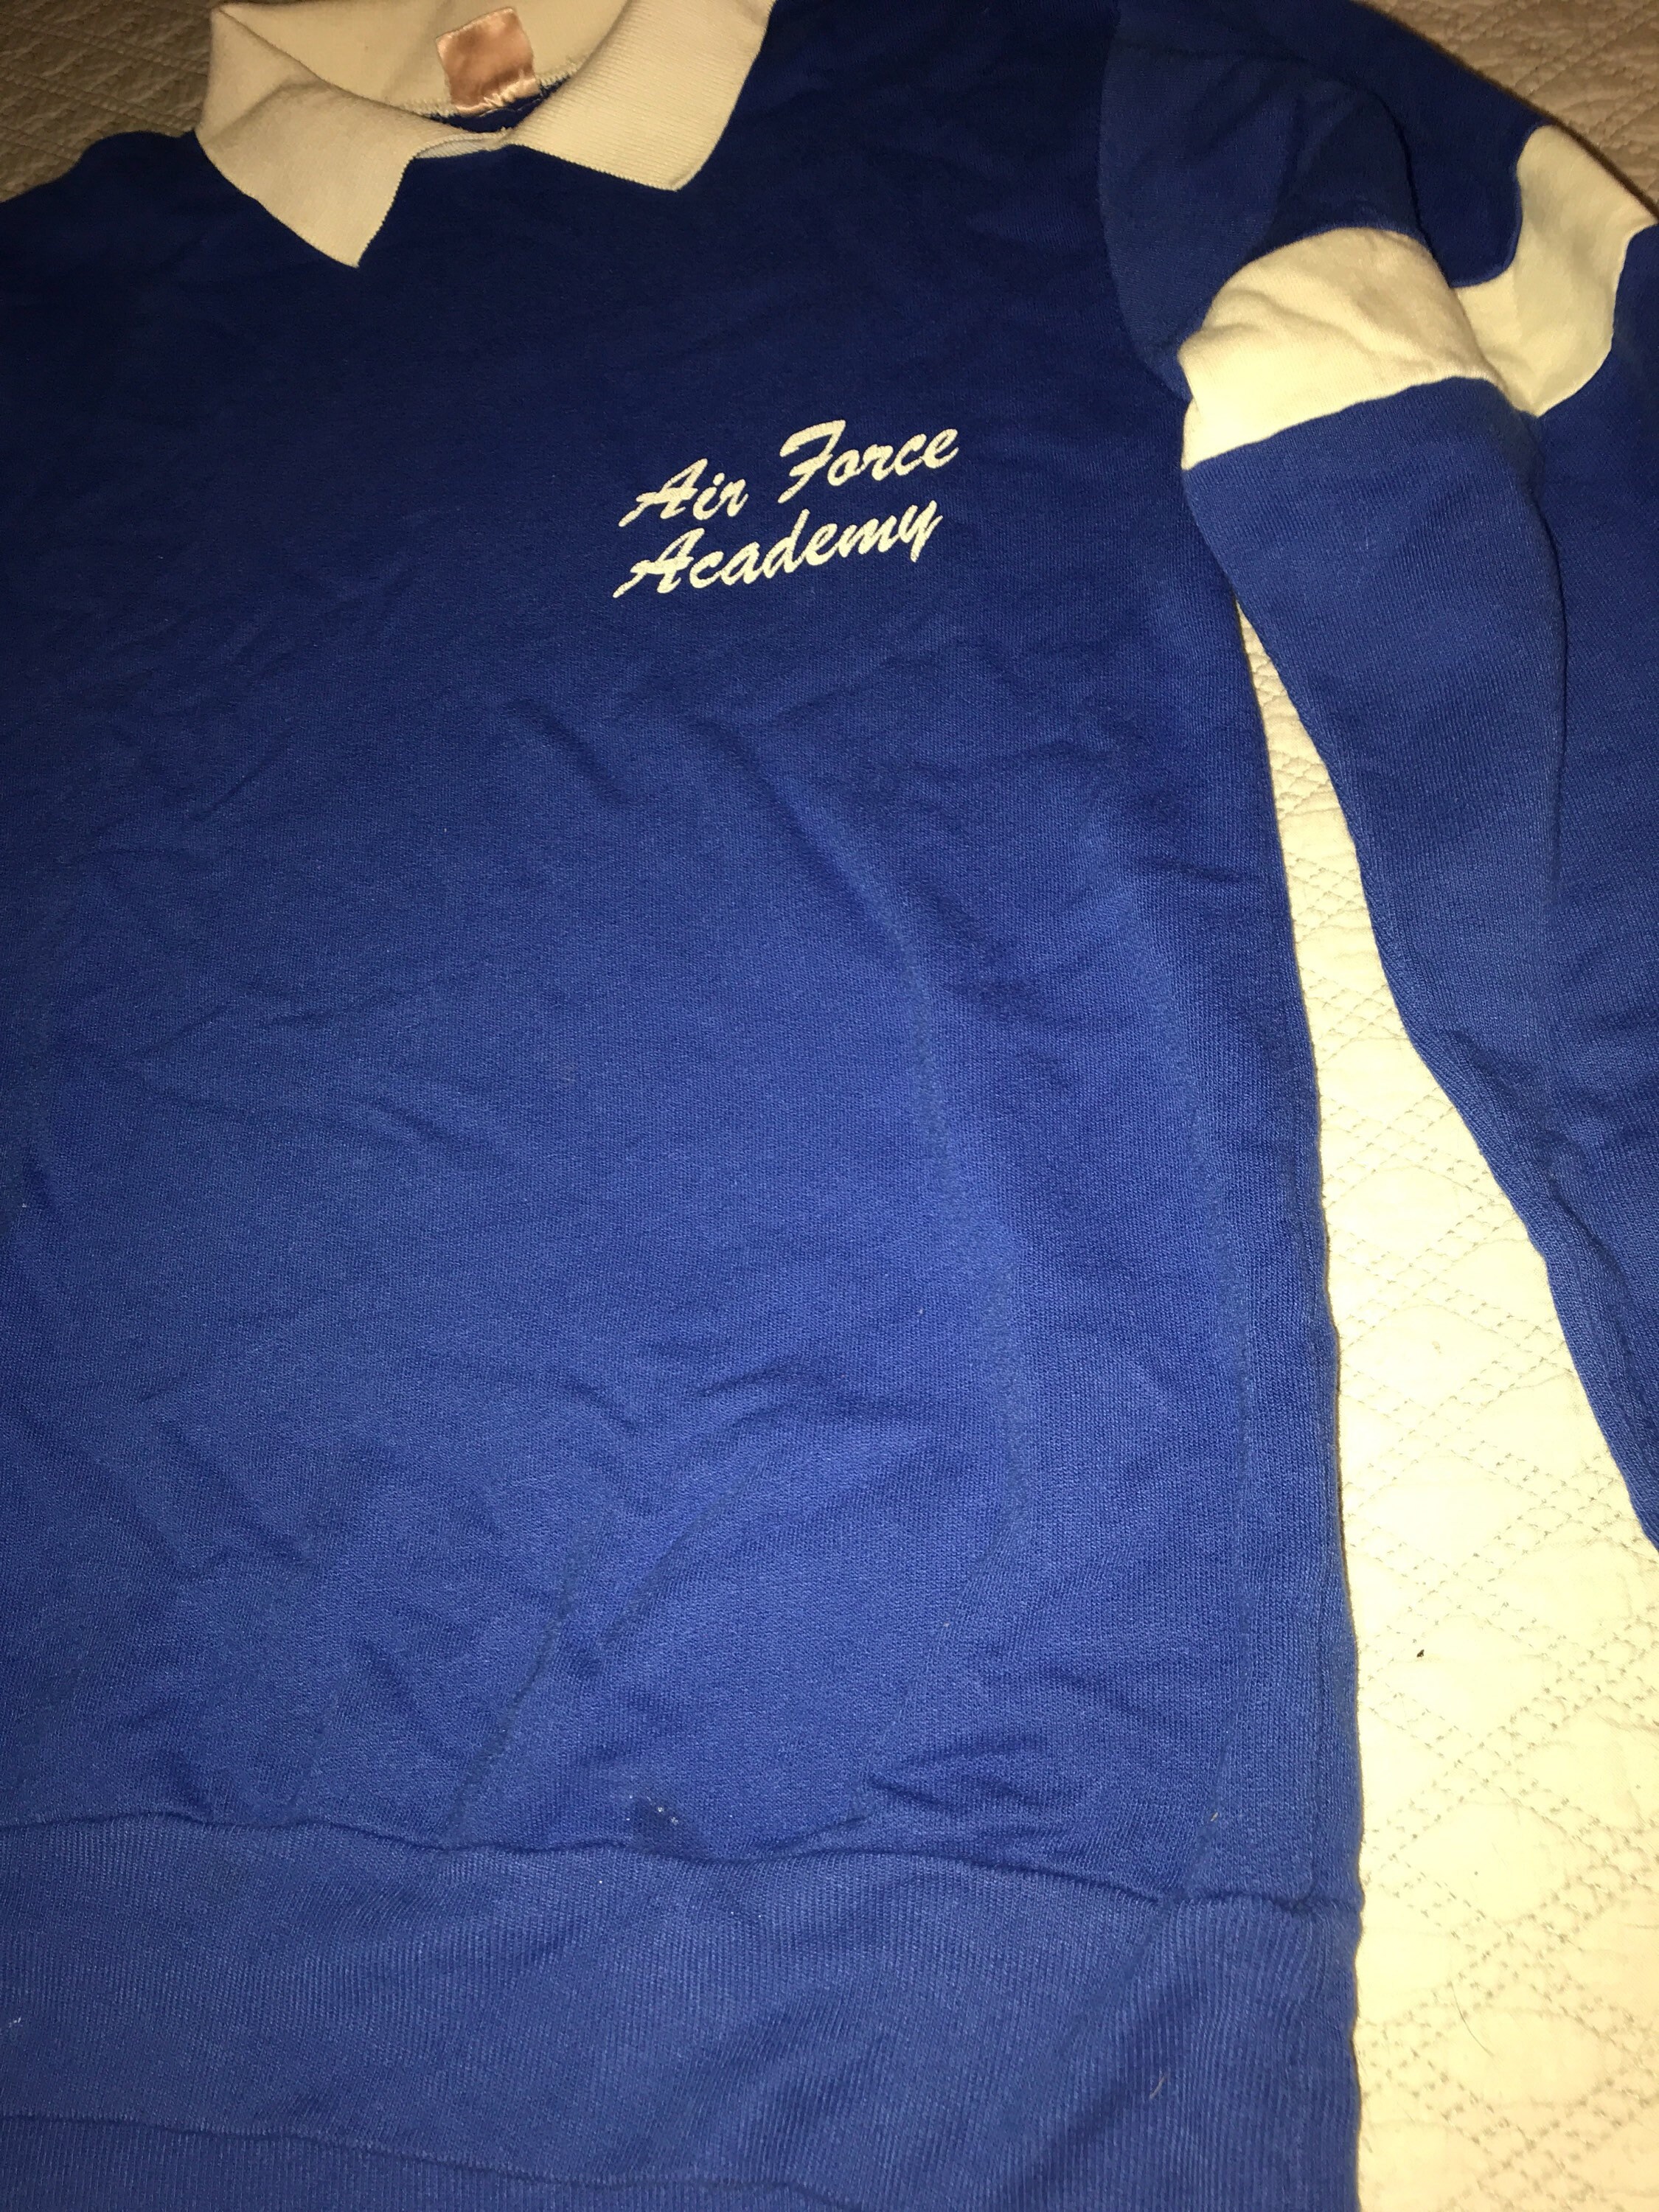 Vintage Sweatshirt. Air Force Academy Sweatshirt. Blue Air Force ...